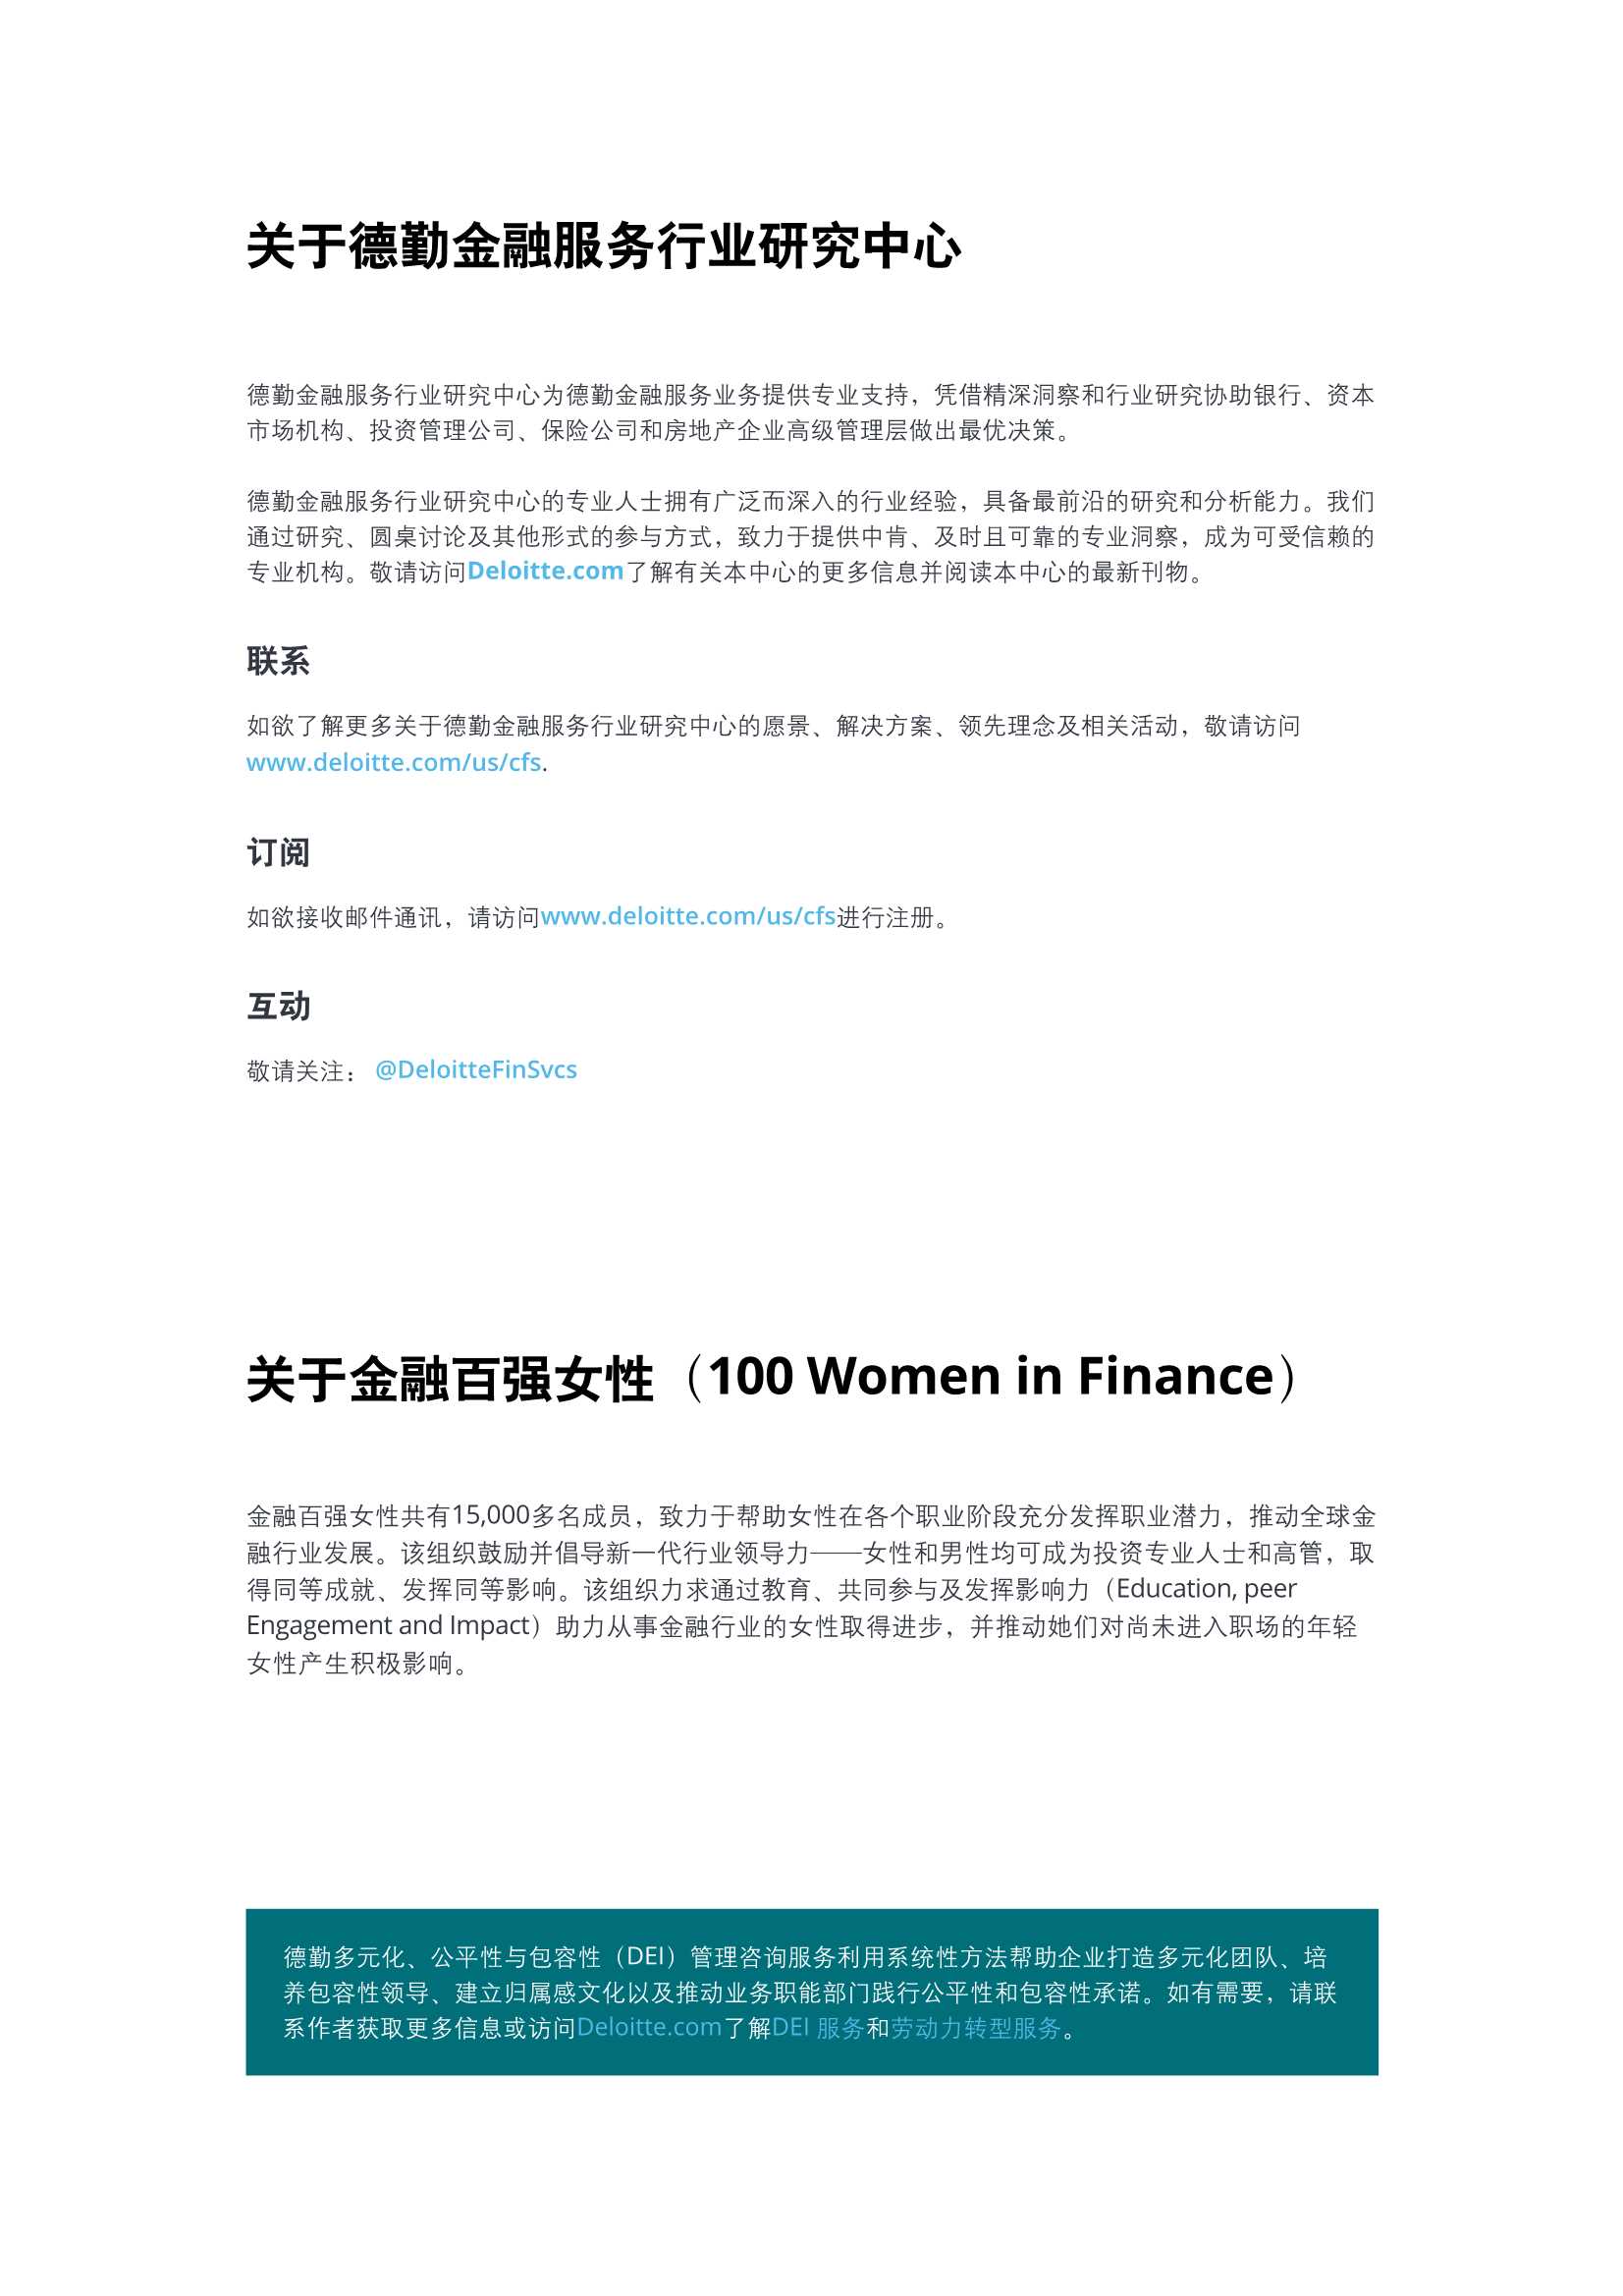 德勤-金融服务业领导力、代表性和性别平等-2022.03-18页